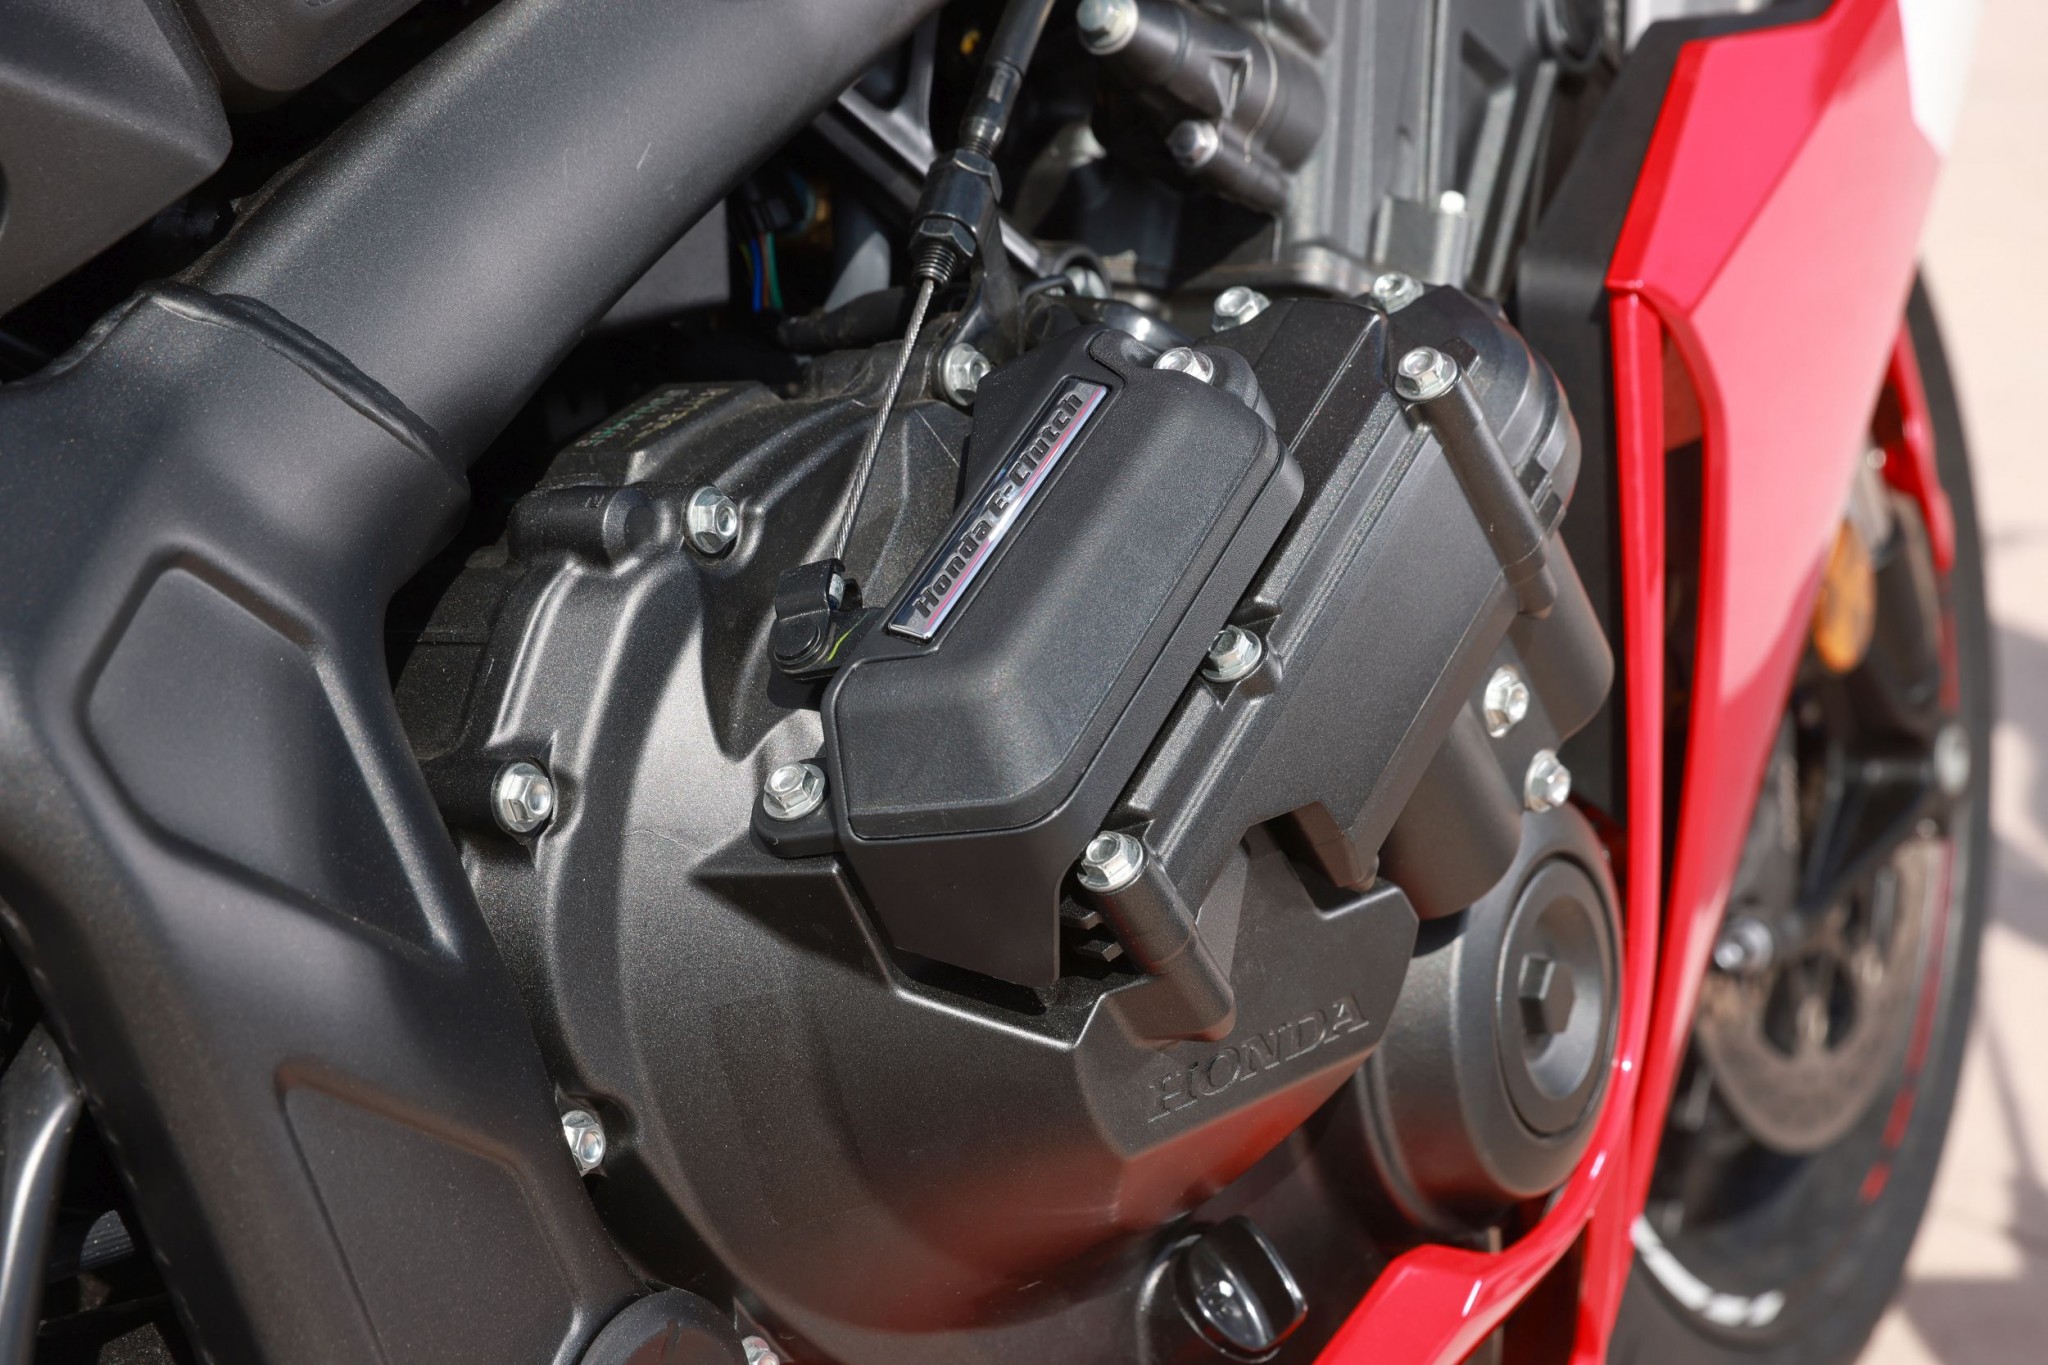 Test elektronske kvačila Honda CBR650R 2024

Honda je nedavno predstavila novu verziju svog popularnog motocikla CBR650R, koji sada dolazi sa elektronskim kvačilom, poznatim kao E-Clutch. Ova inovacija obećava da će olakšati vožnju omogućavajući vozačima da menjaju brzine bez potrebe za ručnim korišćenjem kvačila. 

Elektronsko kvačilo funkcioniše tako što automatski reguliše pritisak potreban za aktiviranje kvačila, što omogućava glatke promene brzina bez prekida u isporuci snage. Ovo je posebno korisno pri vožnji u gradu, gde česte promene brzina mogu biti naporne i otežavaju koncentraciju na saobraćaj.

Testiranje ovog sistema pokazalo je da E-Clutch ne samo da olakšava upravljanje motociklom, već i povećava sigurnost vožnje. Vozači mogu da se fokusiraju na okolinu bez brige o mehaničkim aspektima vožnje, što je posebno važno za manje iskusne vozače.

Honda CBR650R sa elektronskim kvačilom biće dostupna na tržištu od 2024. godine i očekuje se da će privući veliki broj kupaca, kako iskusnih tako i onih koji tek ulaze u svet motociklizma. Ovaj model predstavlja značajan korak napred u tehnologiji motocikala i potencijalno postavlja nove standarde u industriji. - Слика 43